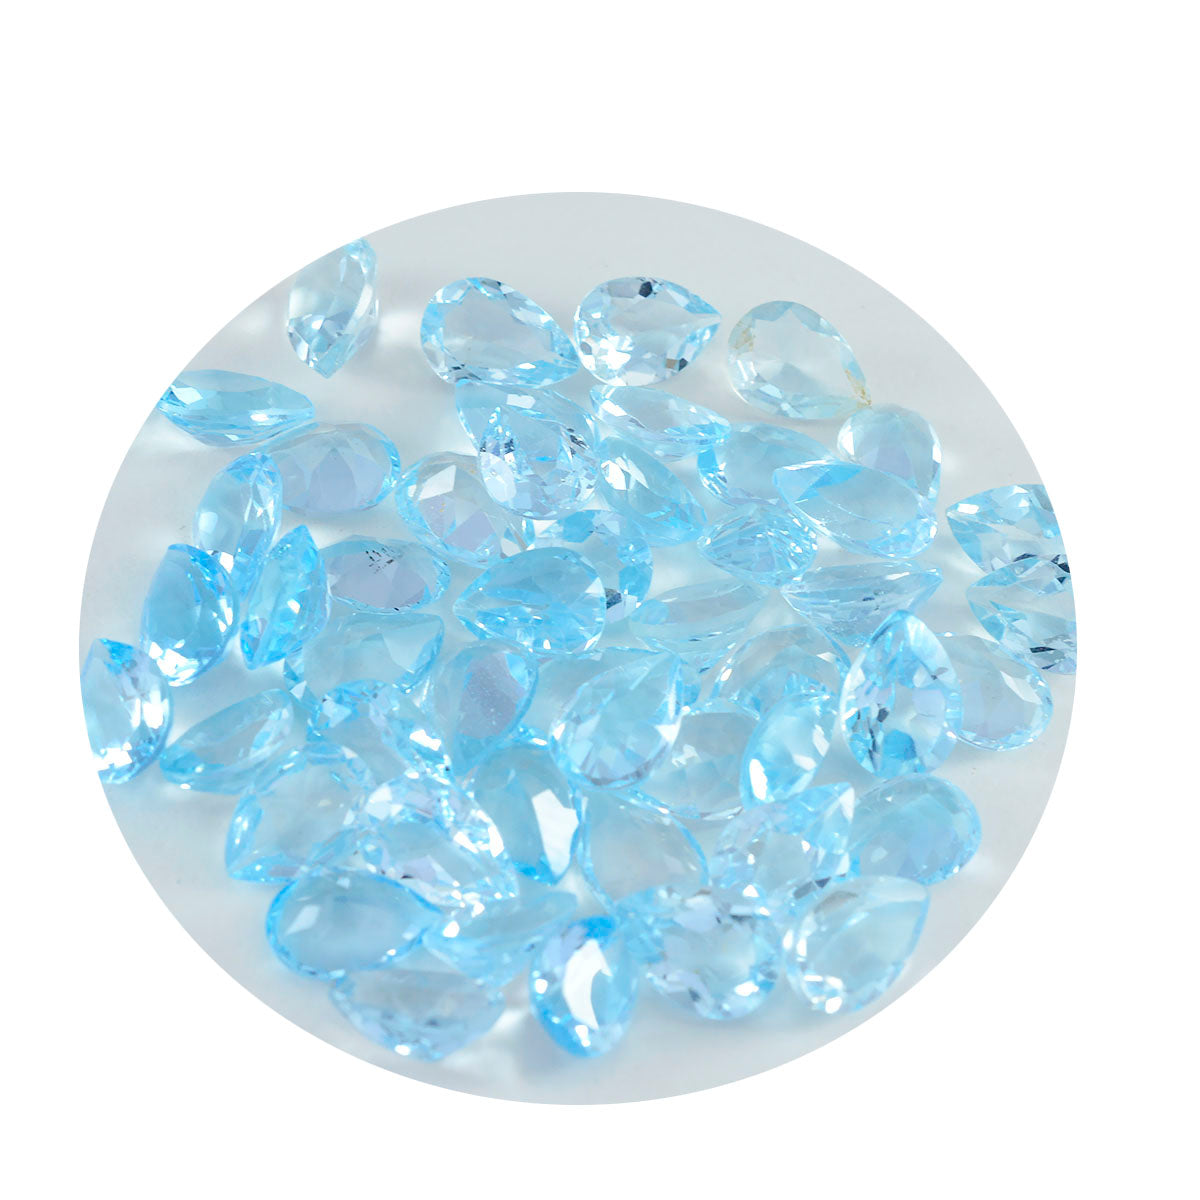 riyogems 1 шт. натуральный голубой топаз ограненный 4х6 мм грушевидный красивый качественный драгоценный камень